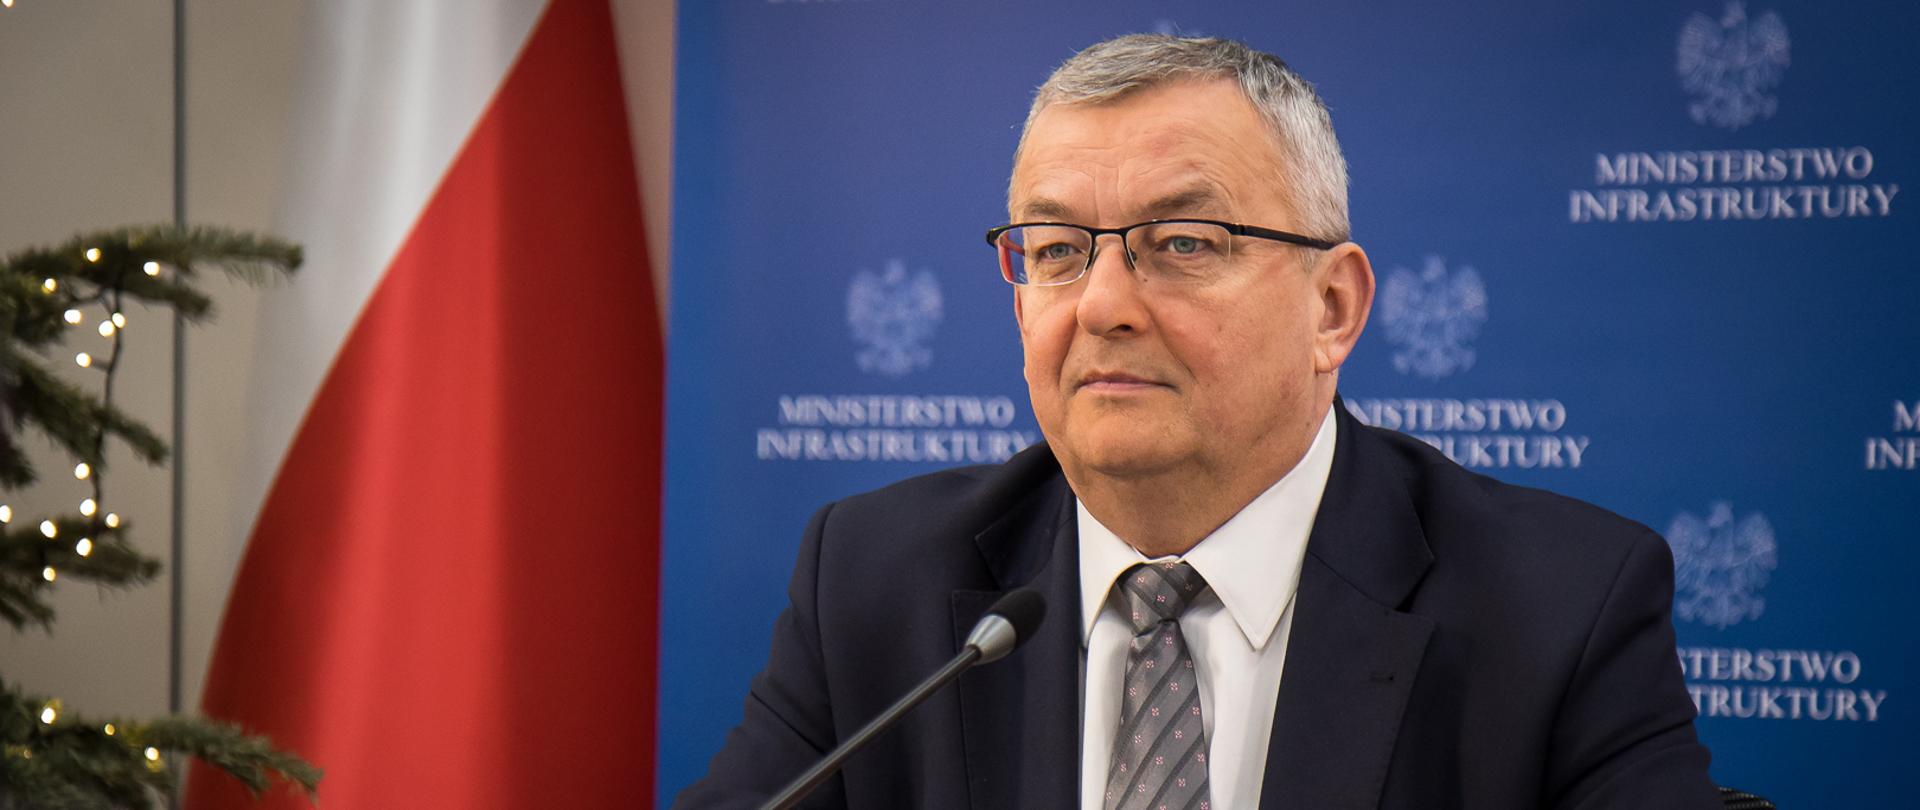 Minister Andrzej Adamczyk uczestniczył w konferencji prasowej podczas której została podpisana umowa na realizację drogi ekspresowej S6 od Słupska do Bobrownika